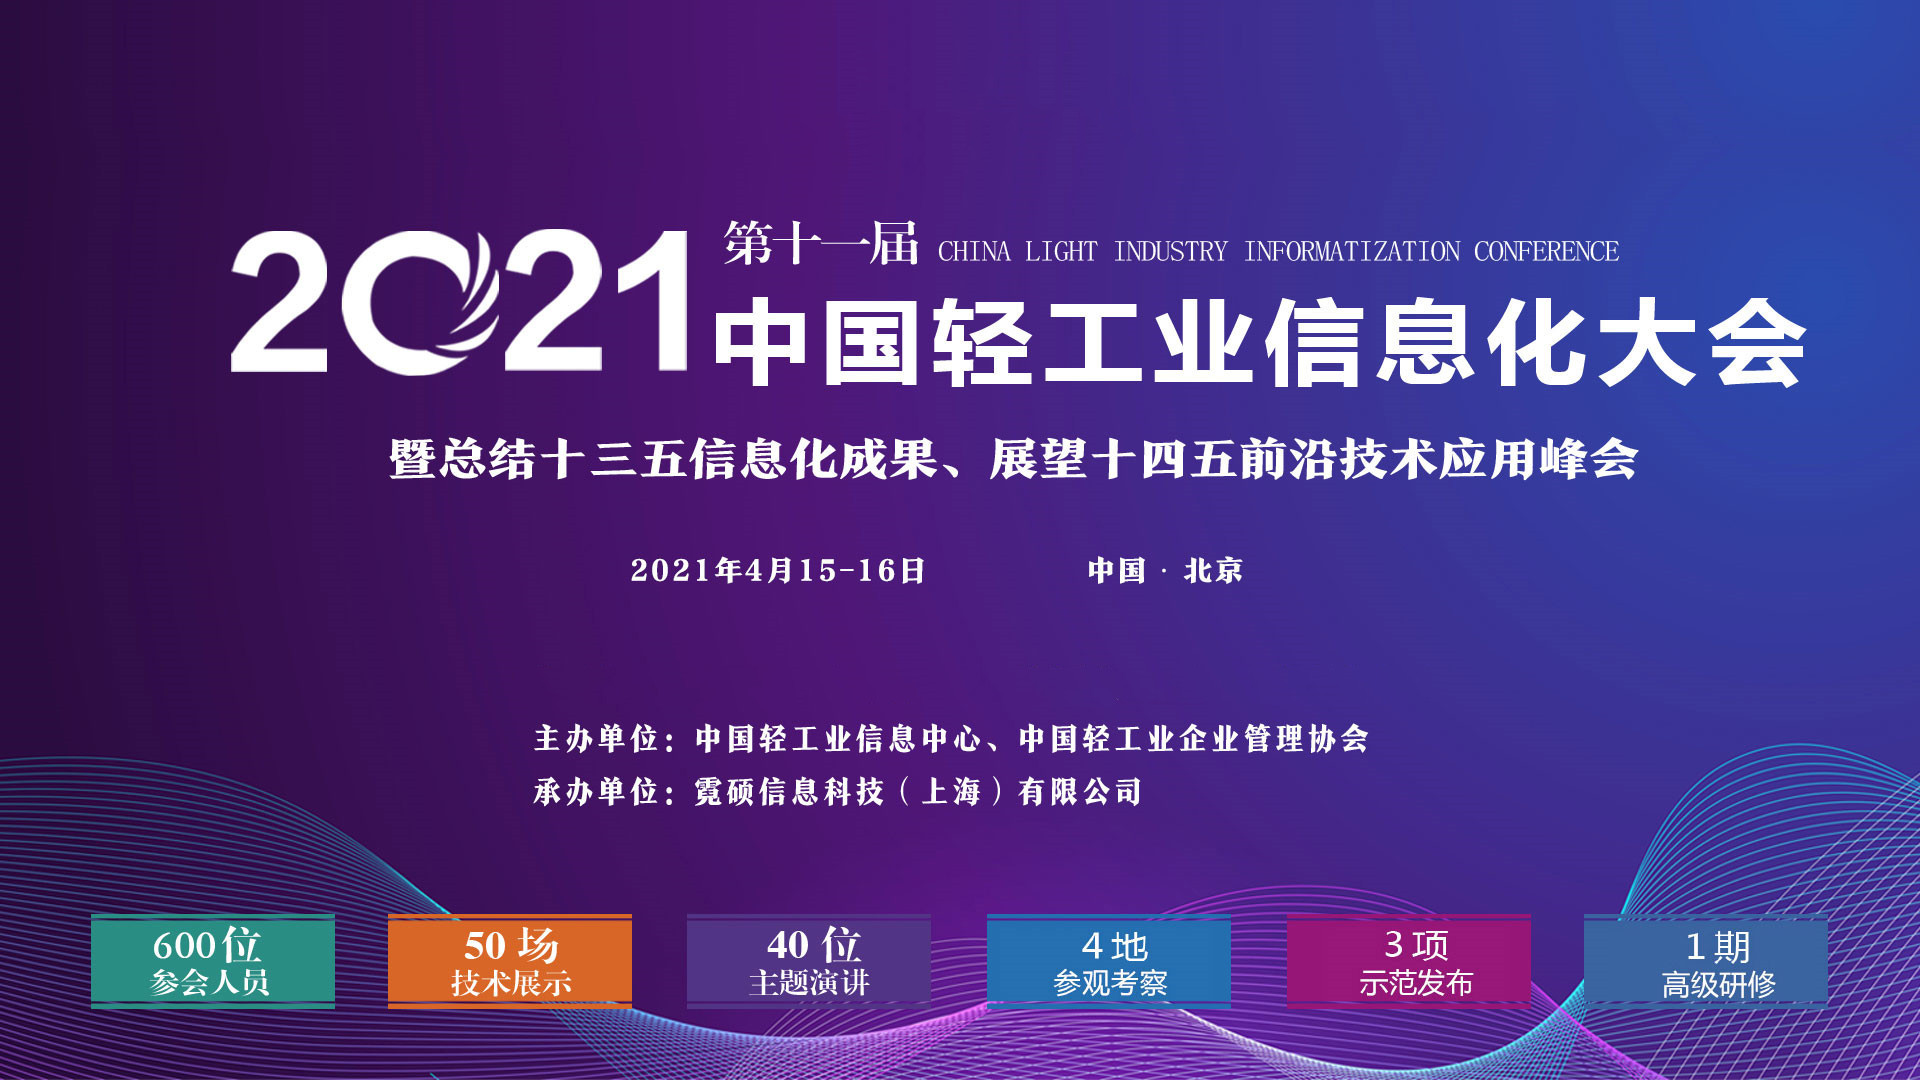 2021第十一届中国轻工业信息化大会暨回顾十三五信息化成果、展示十四五前沿技术应用峰会